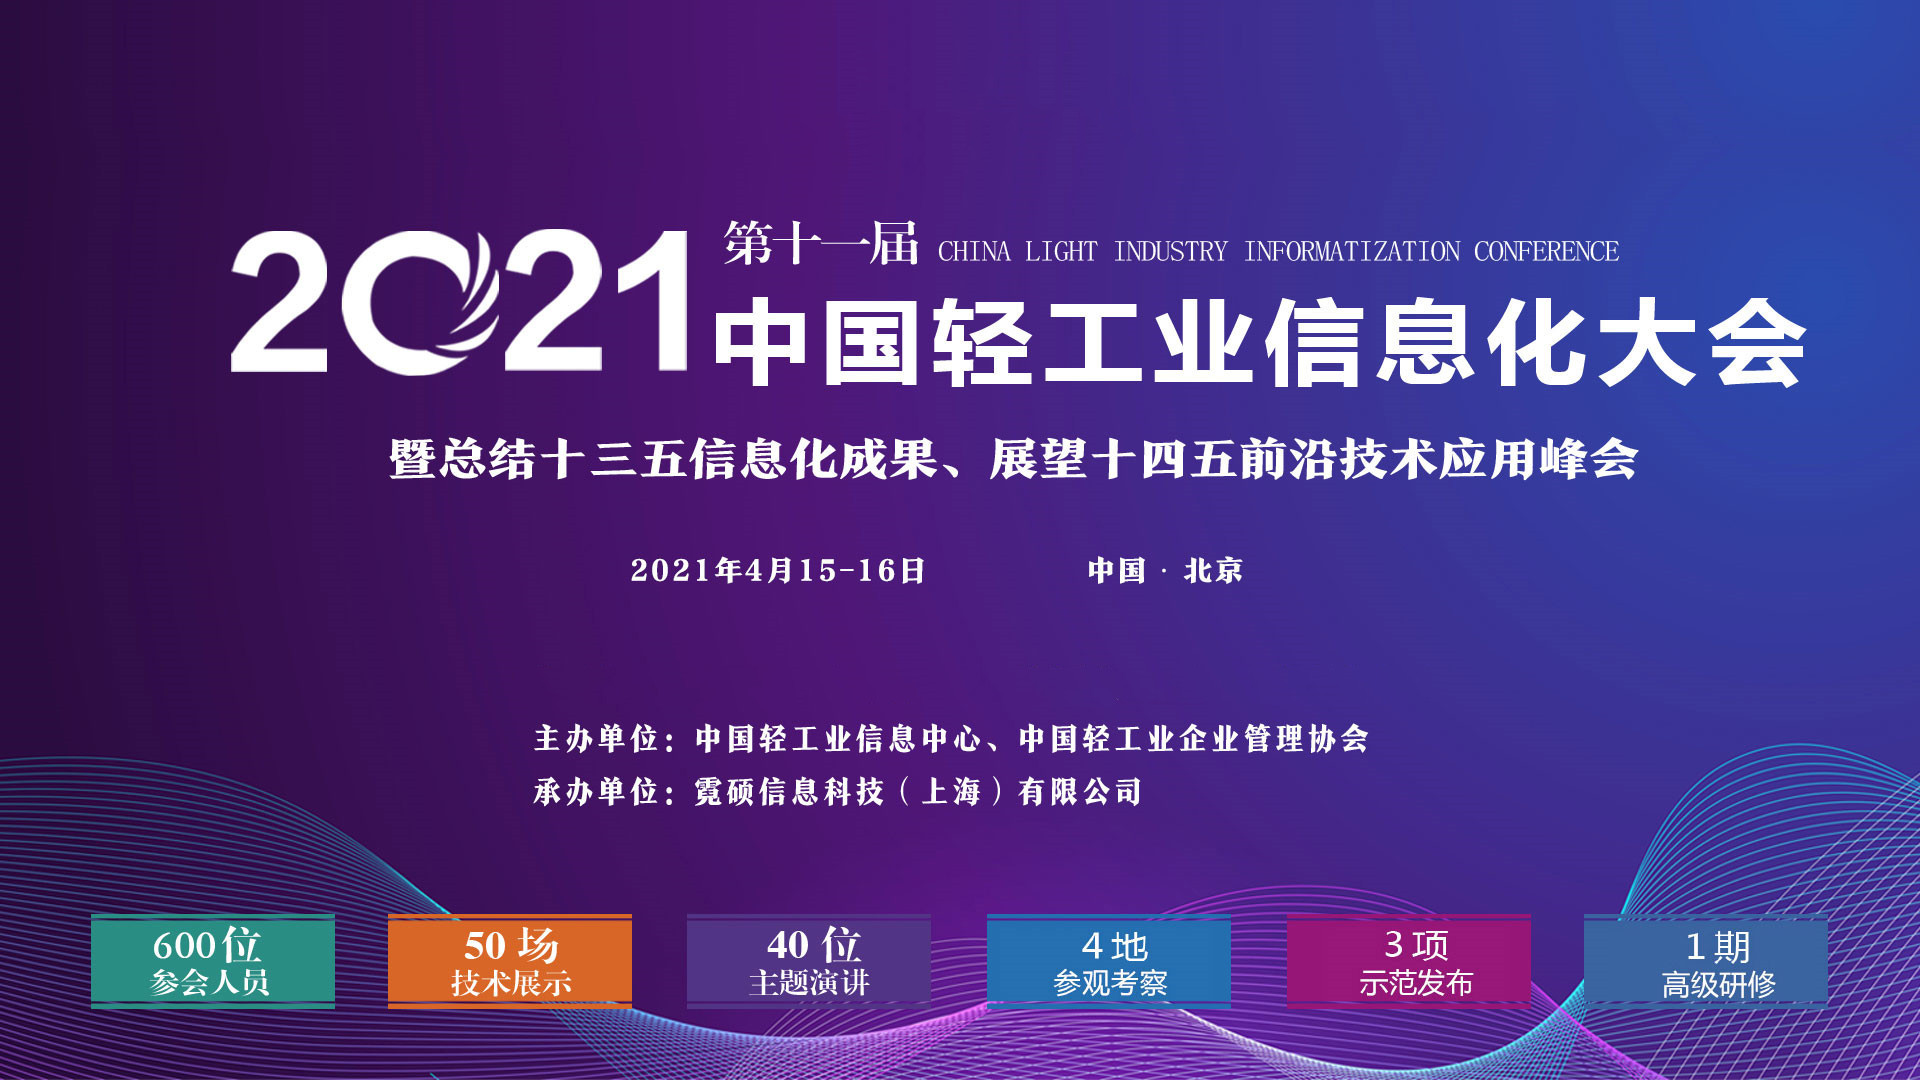 2021第十一届中国轻工业信息化大会暨回顾十三五信息化成果、展示十四五前沿技术应用峰会